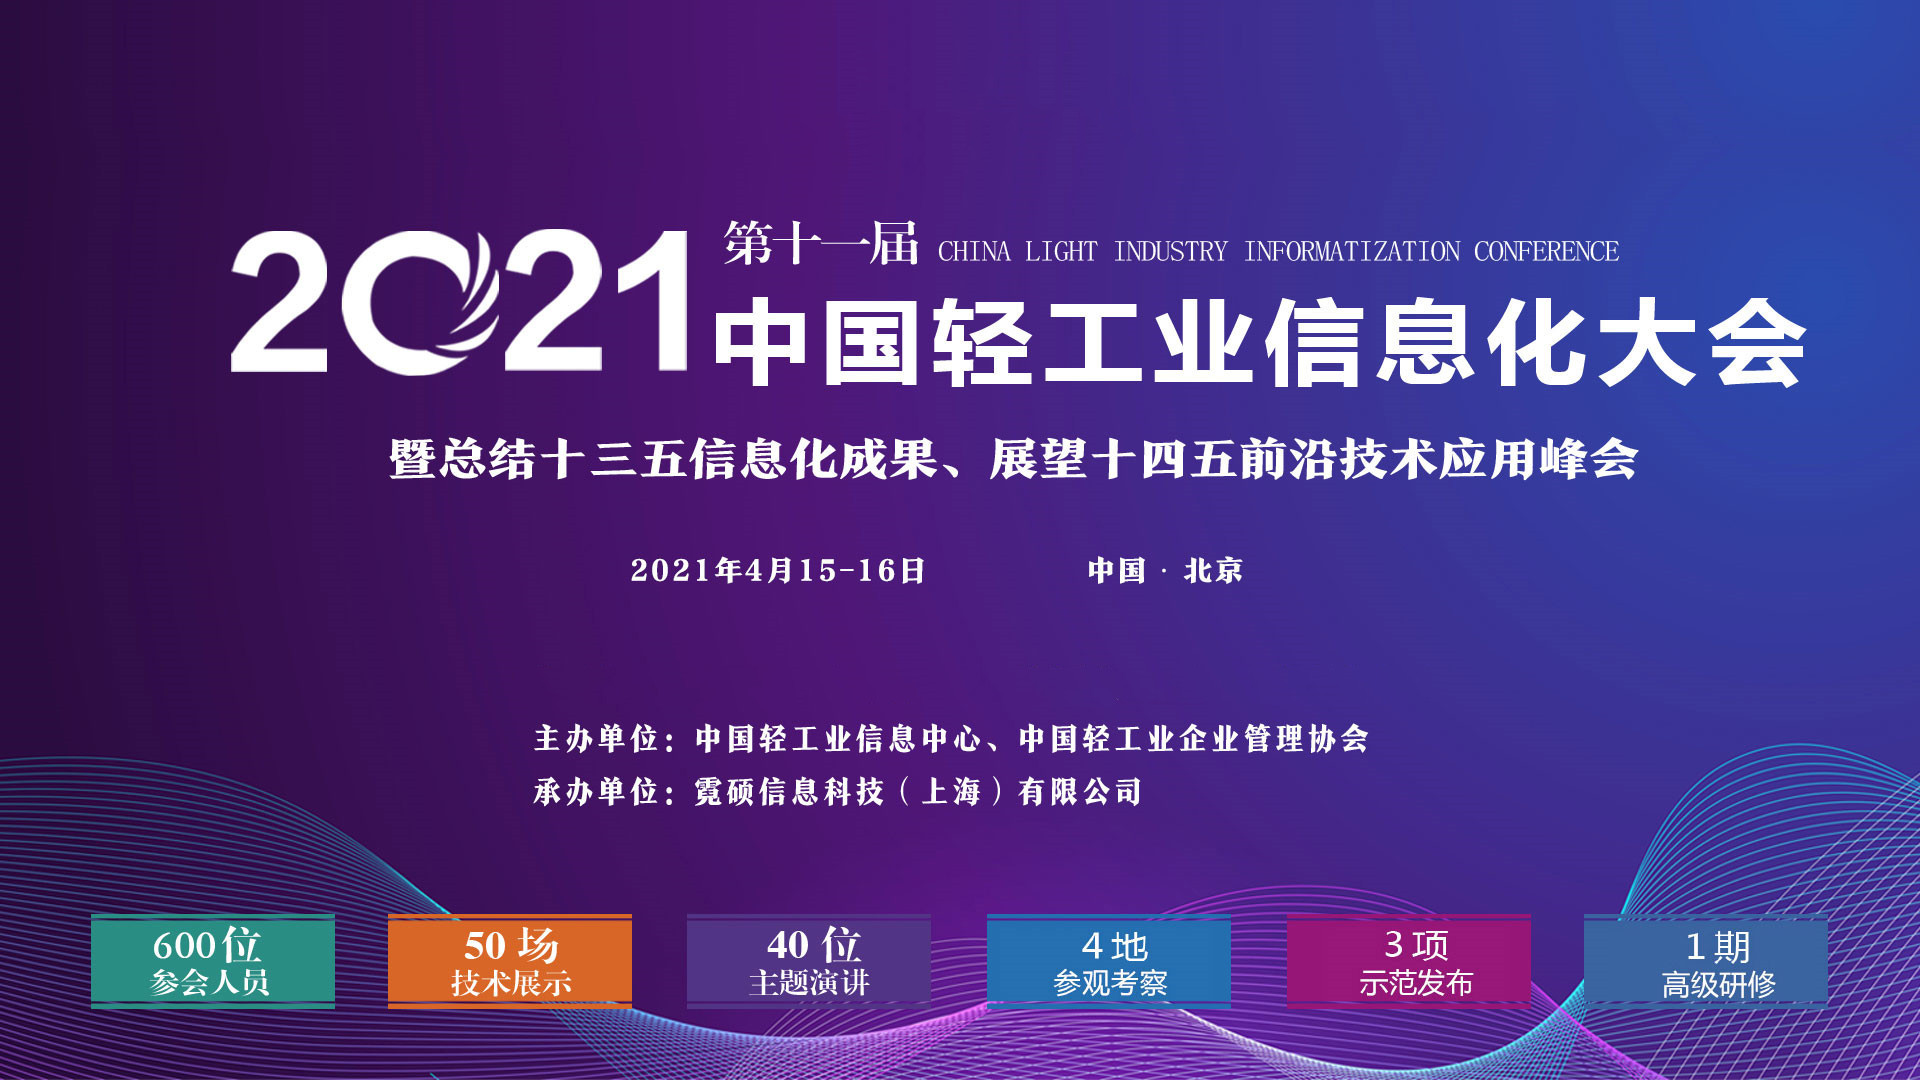 2021第十一届中国轻工业信息化大会暨回顾十三五信息化成果、展示十四五前沿技术应用峰会